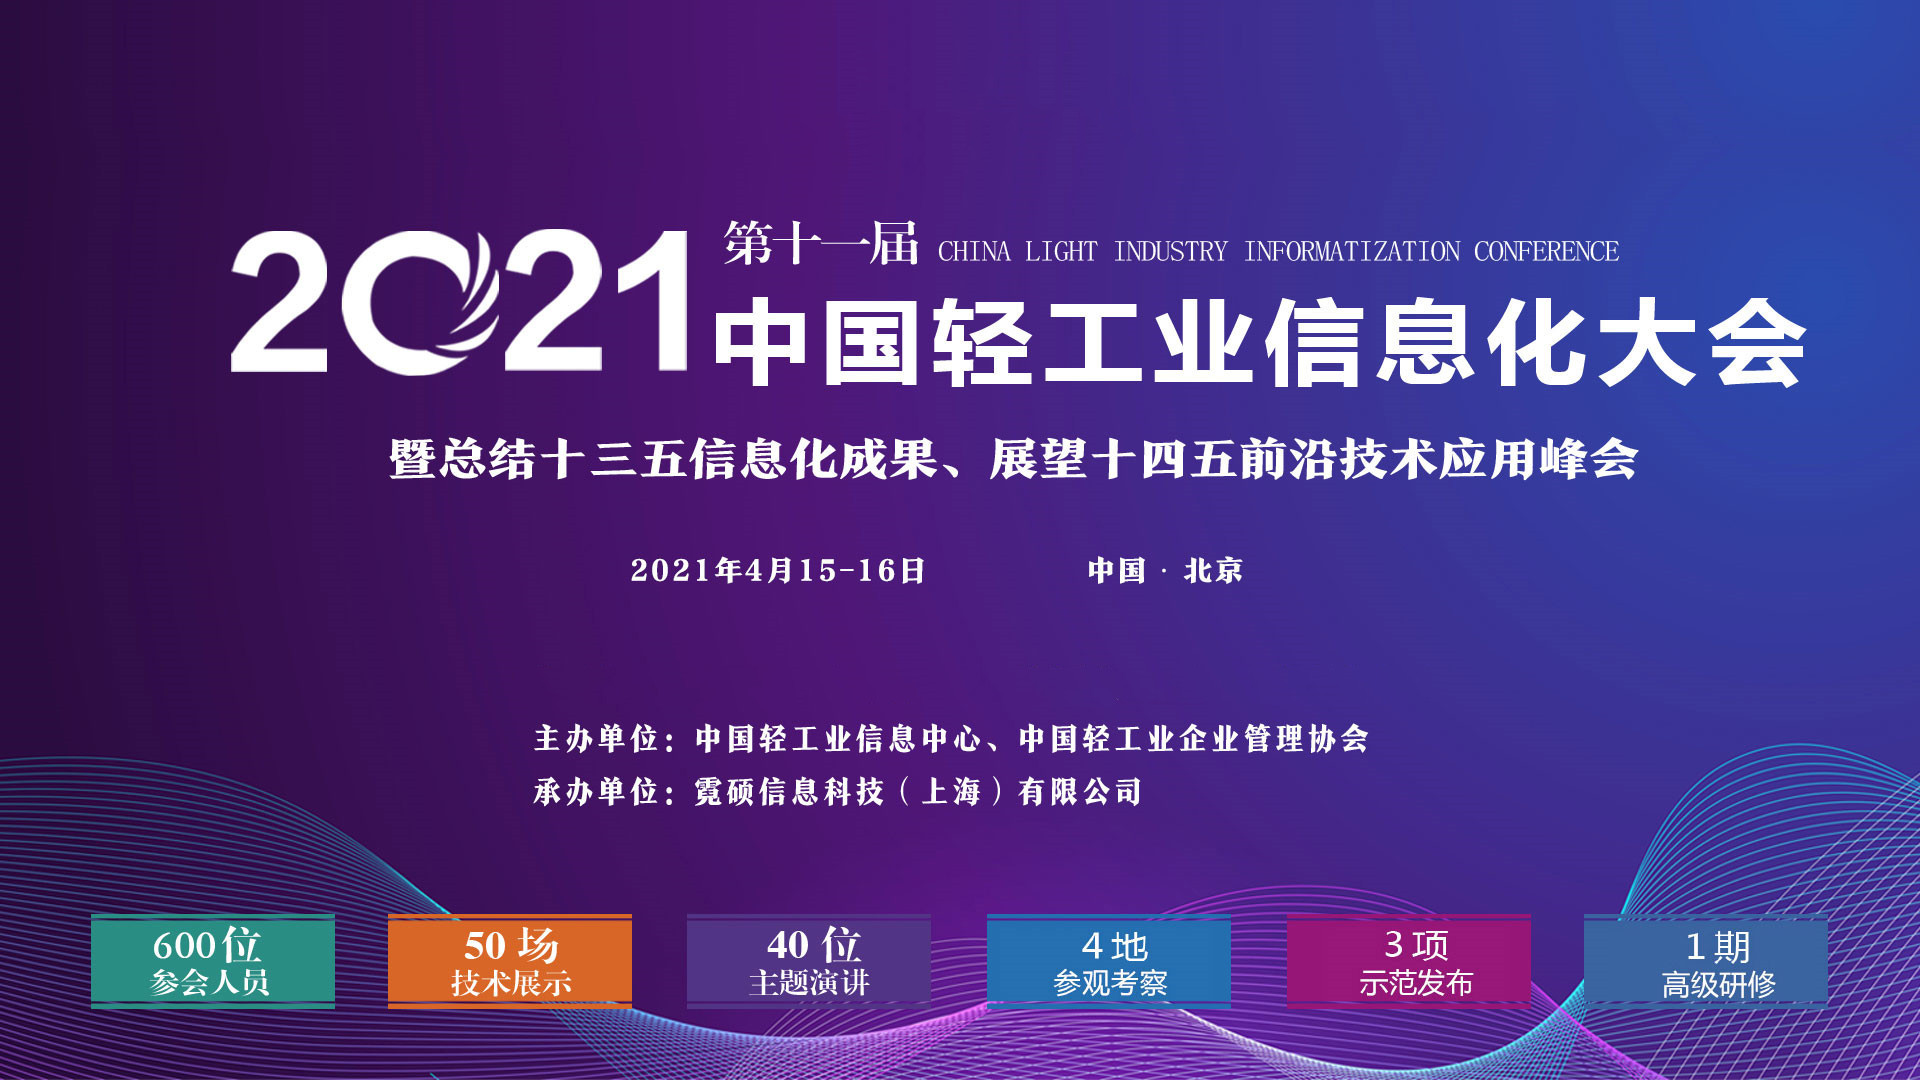 2021第十一届中国轻工业信息化大会暨回顾十三五信息化成果、展示十四五前沿技术应用峰会